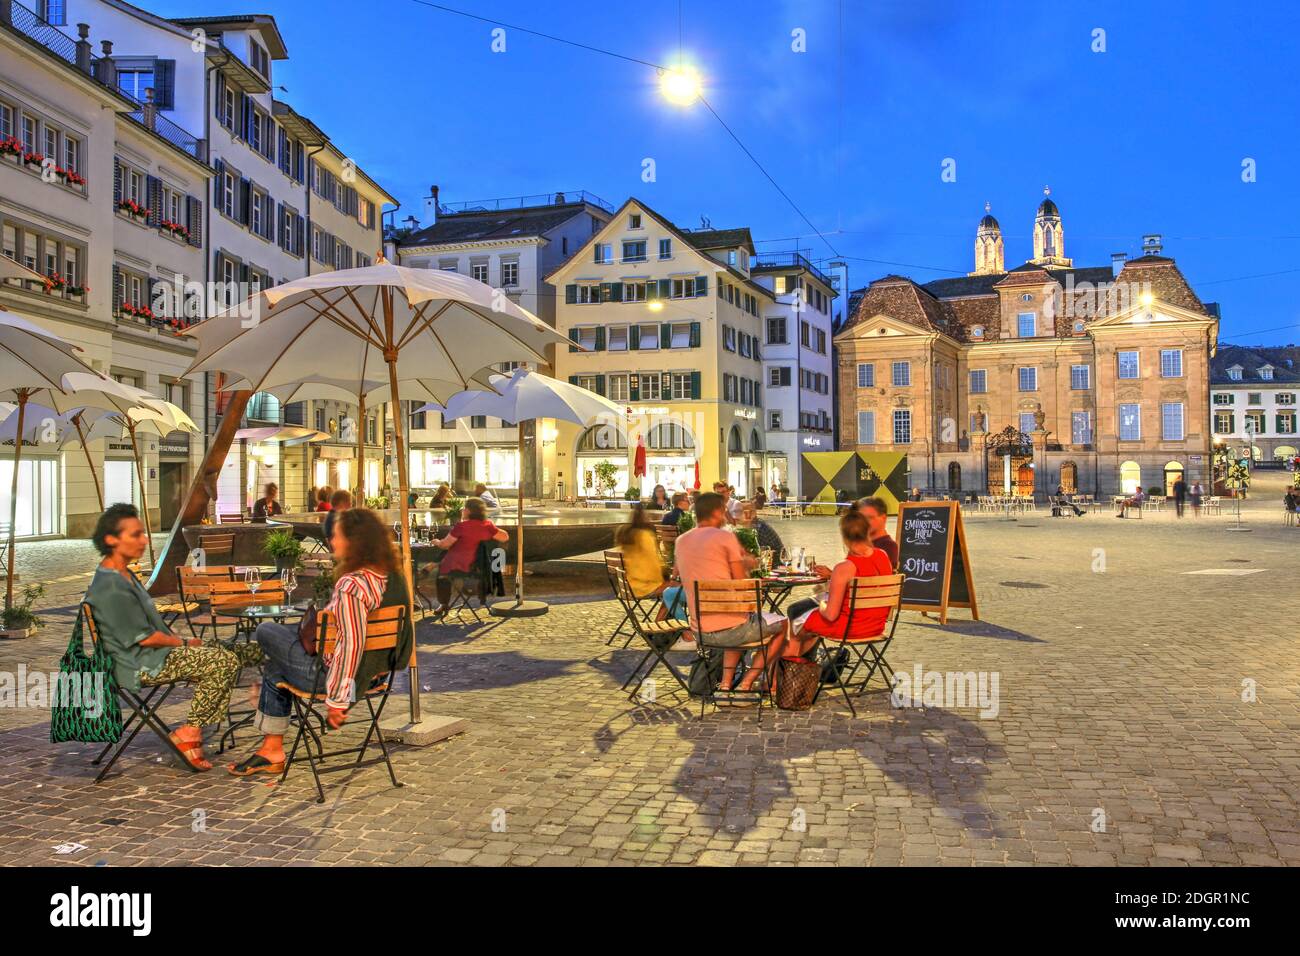 Zurich, Switzerland - June 27, 2020 - Night scene in Munsterhof Square in the Lindenhof quarter of Altstadt (old town) Zurich, Switzerland, featuring Stock Photo